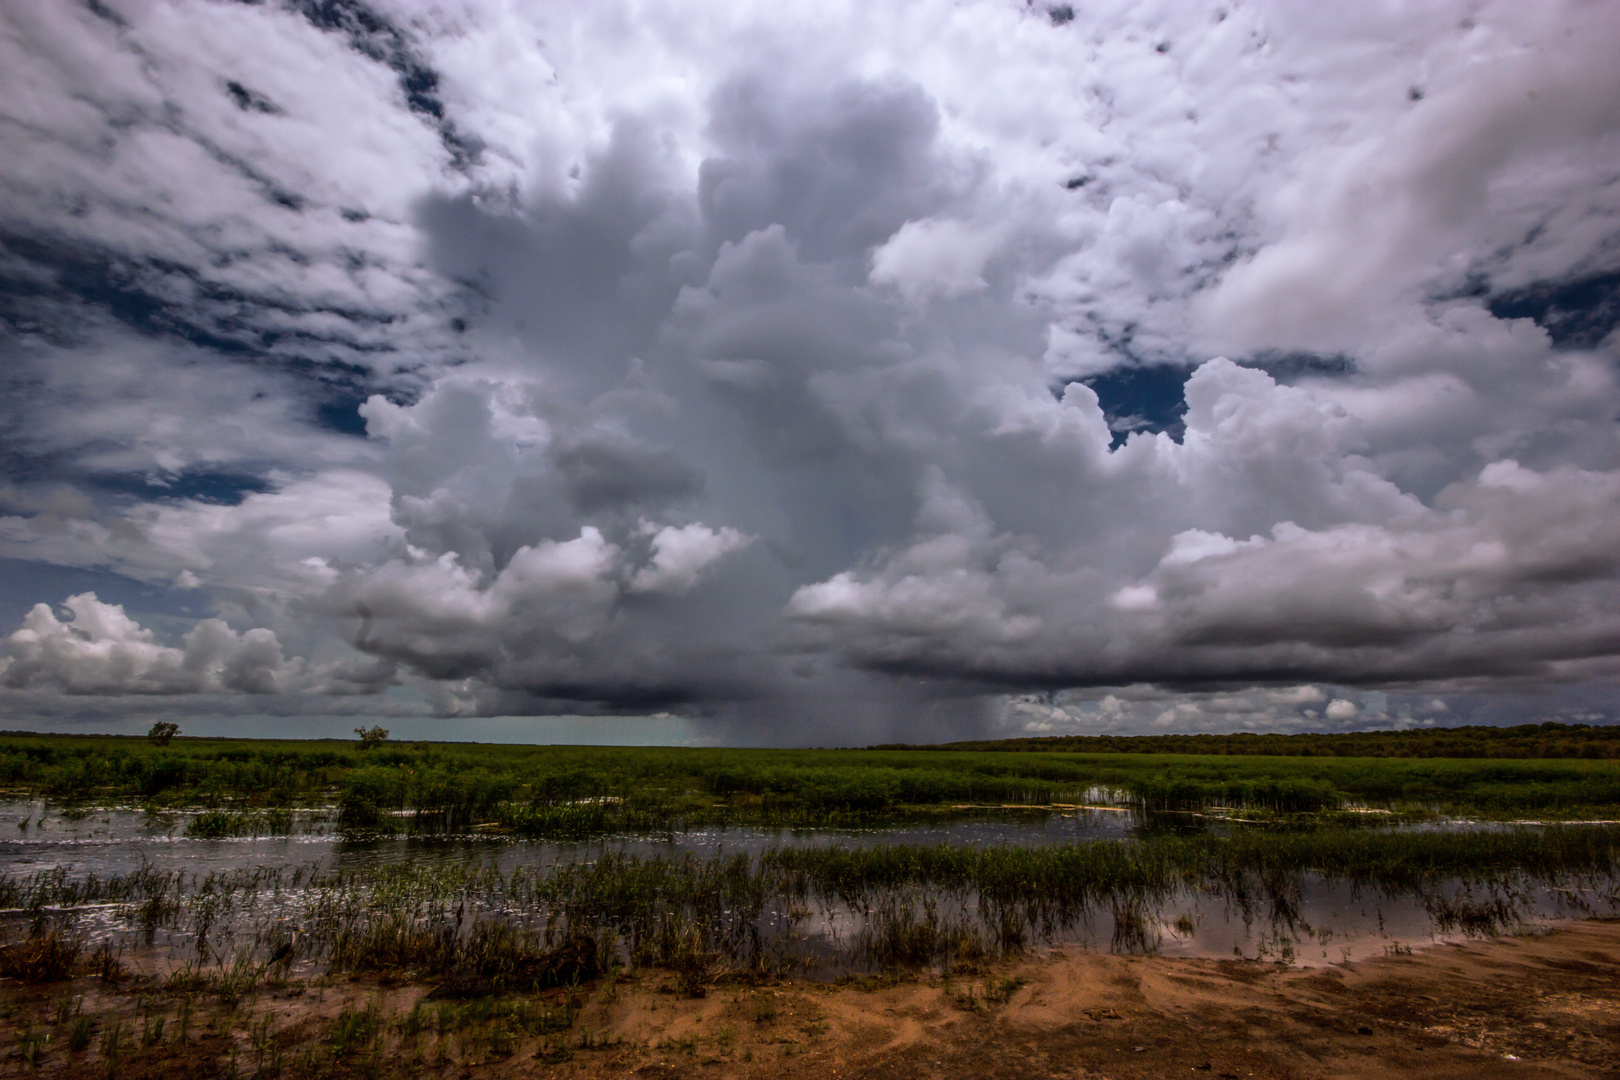 Storm over the Wetlands